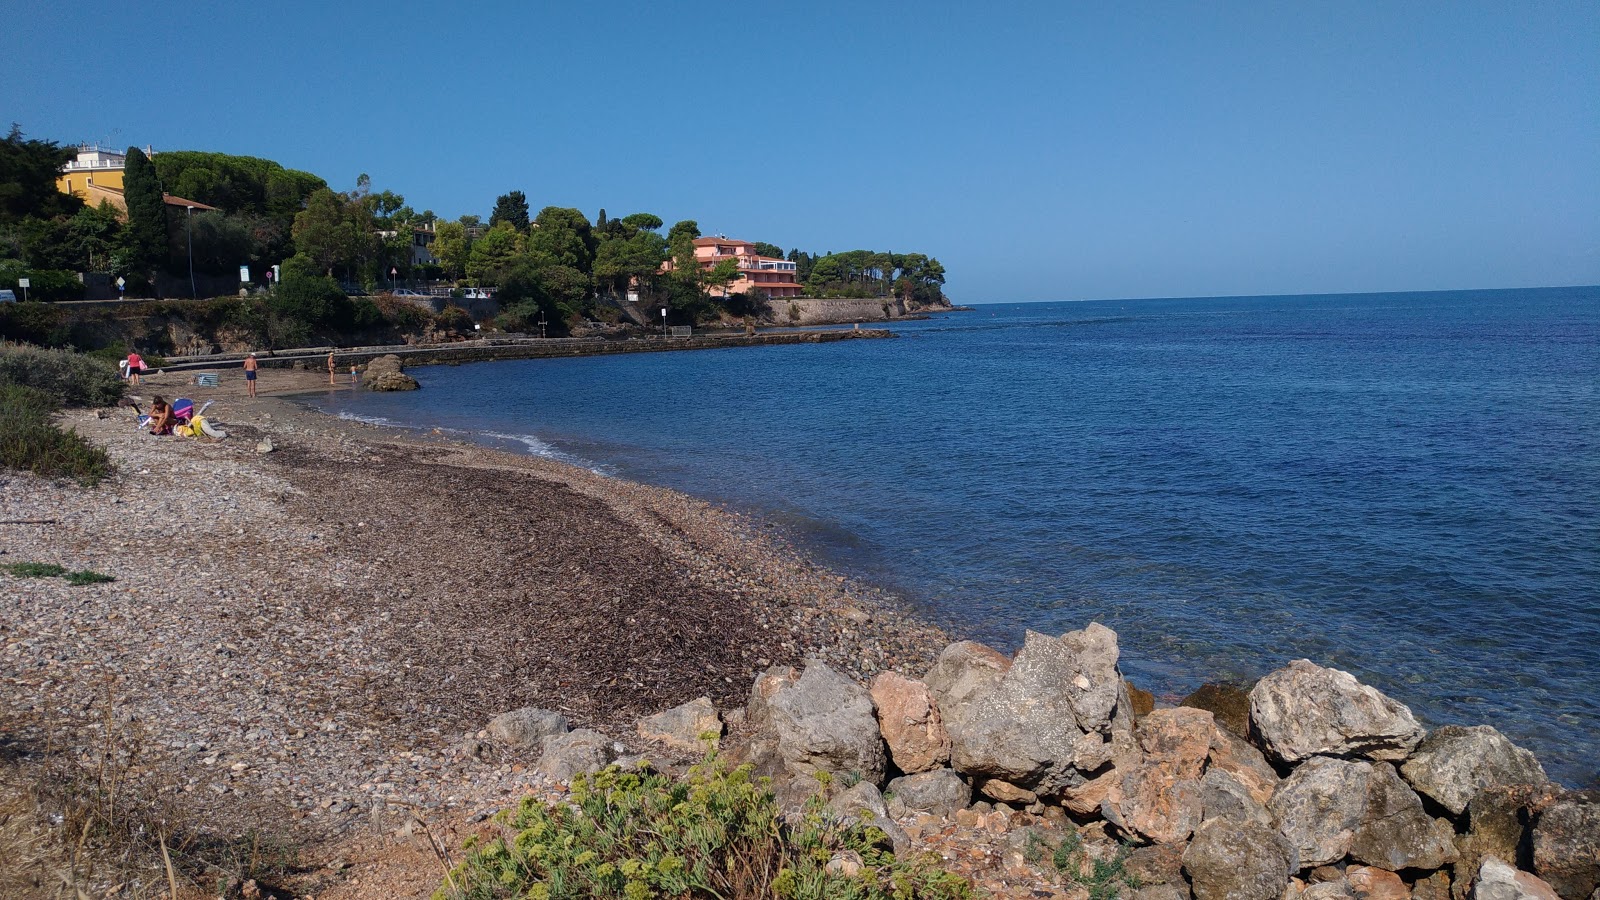 Photo of Spiaggia di St.Liberata with long straight shore